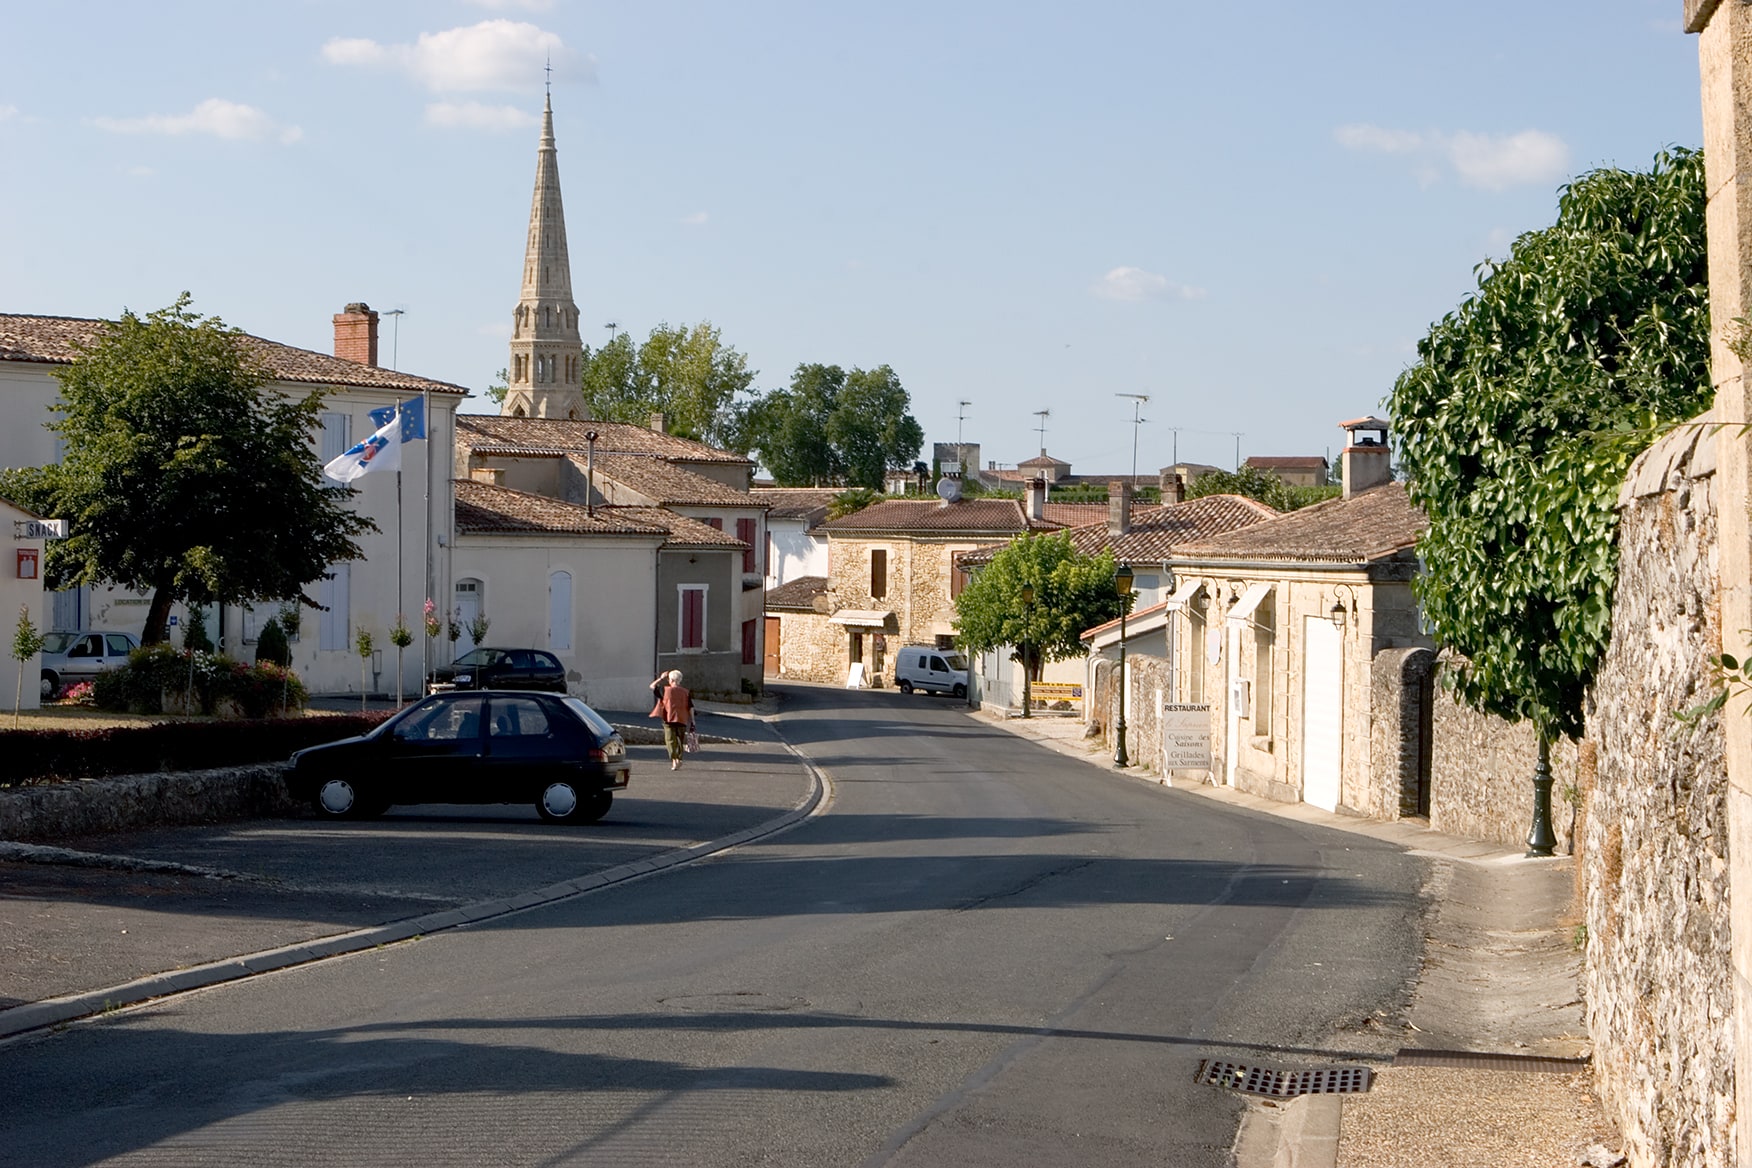 Sauternes, France